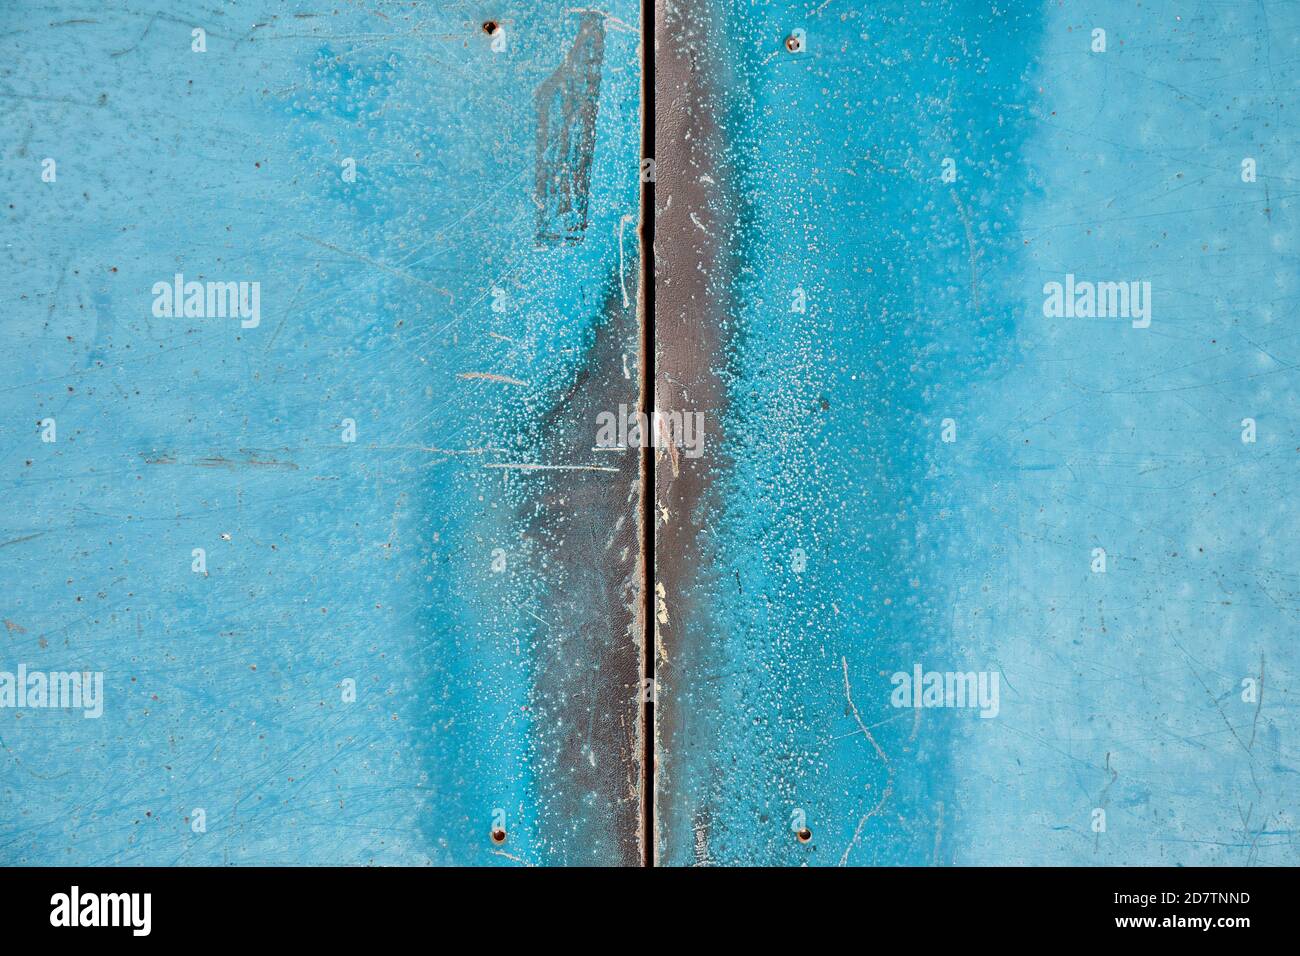 Crack between worn metal doors, turquoise; Tokyo Stock Photo